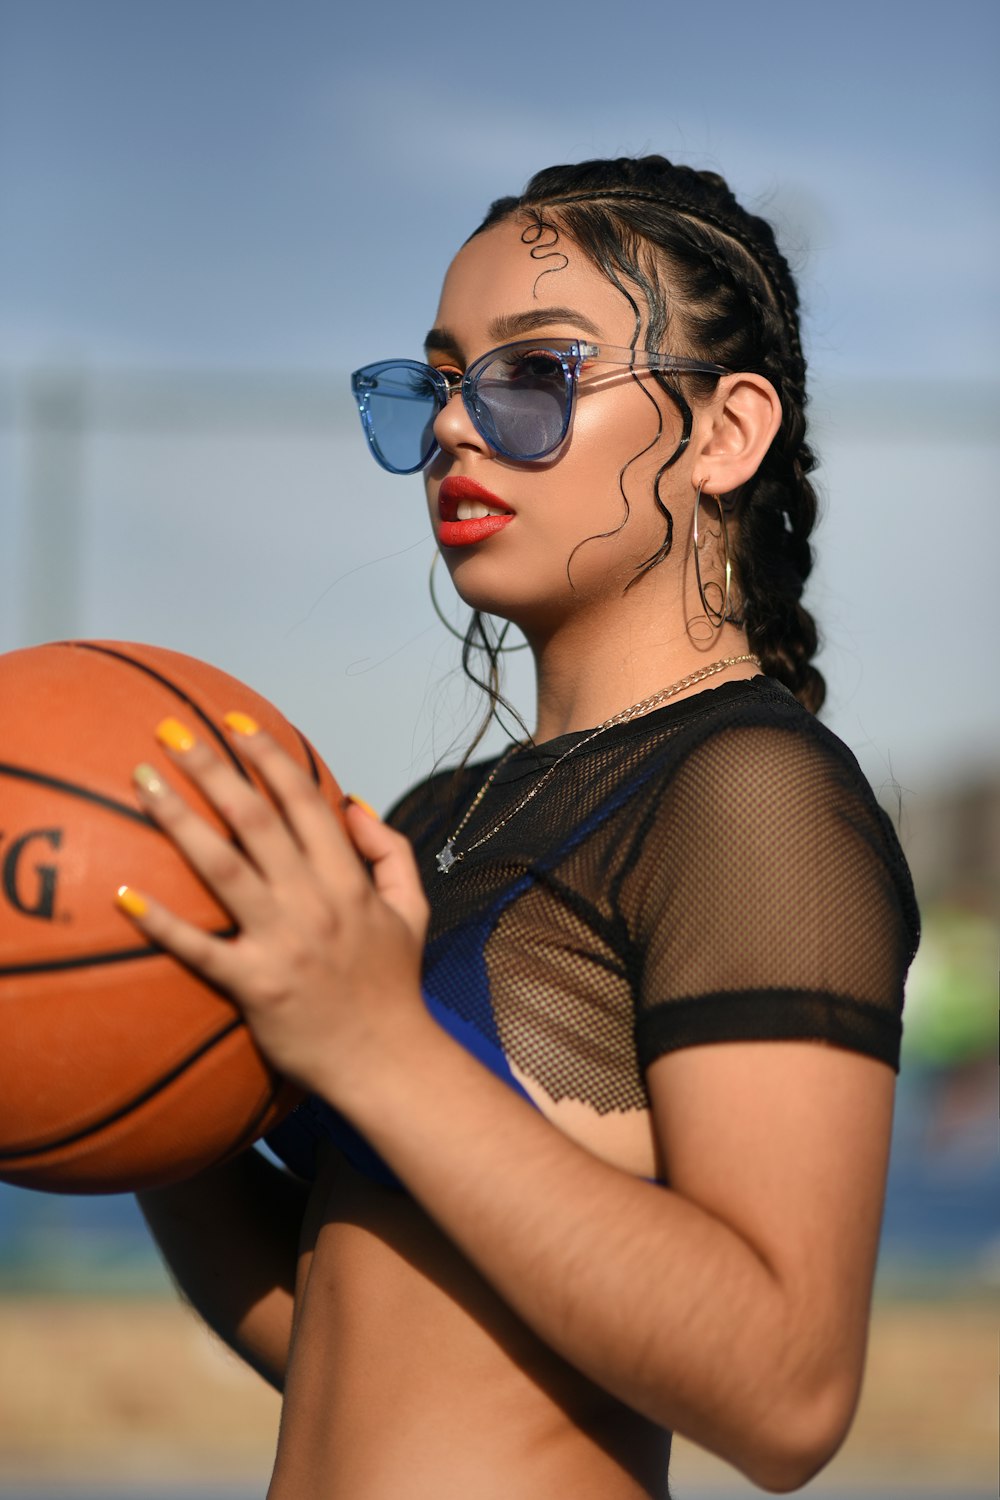 バスケットボールを保持している黒いメッシュのクロップトップの女性